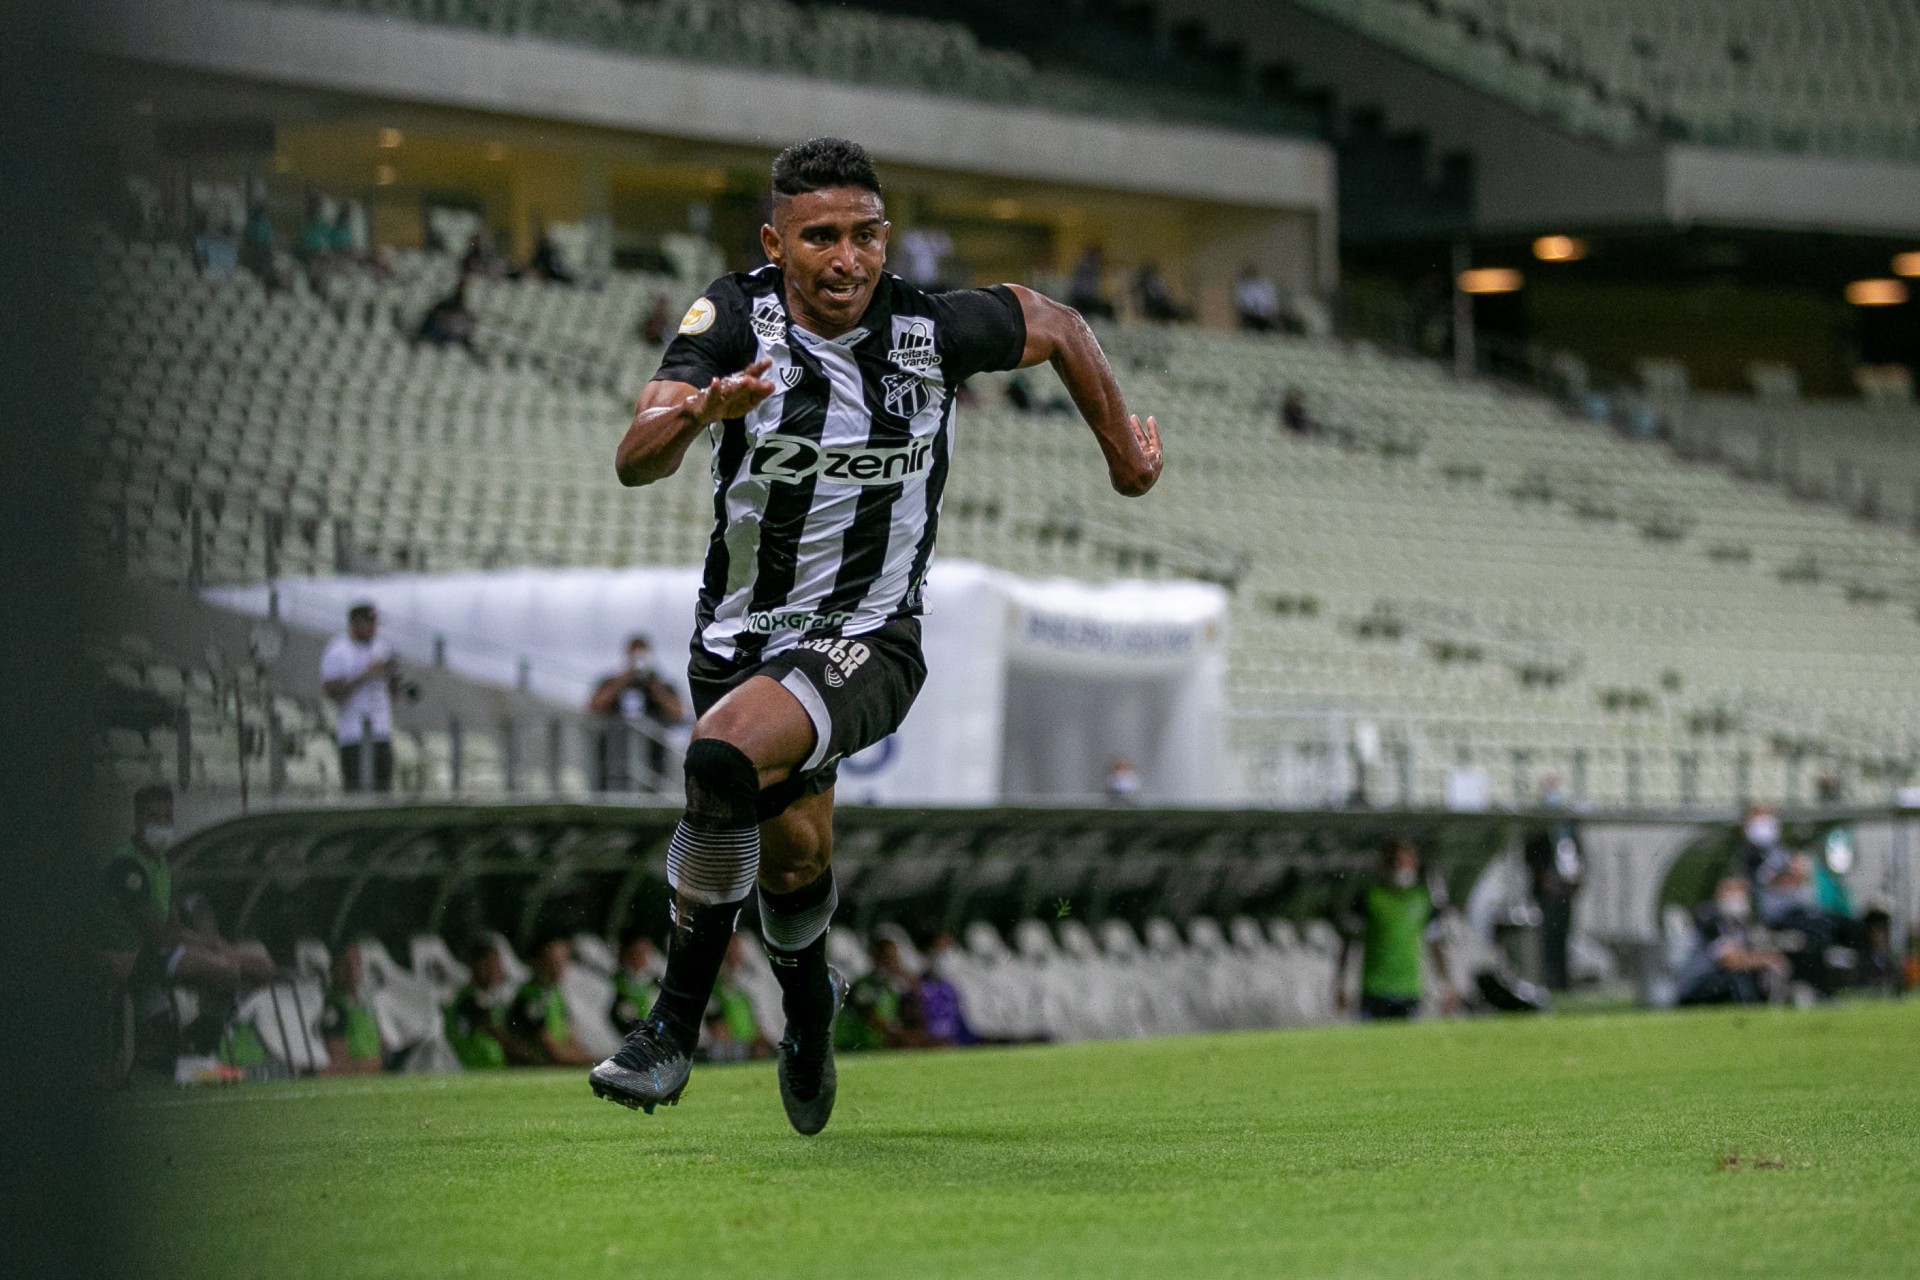 Desempenho defensivo tem sido o destaque de Buiú em campo (Foto: Felipe Santos/CearaSC)